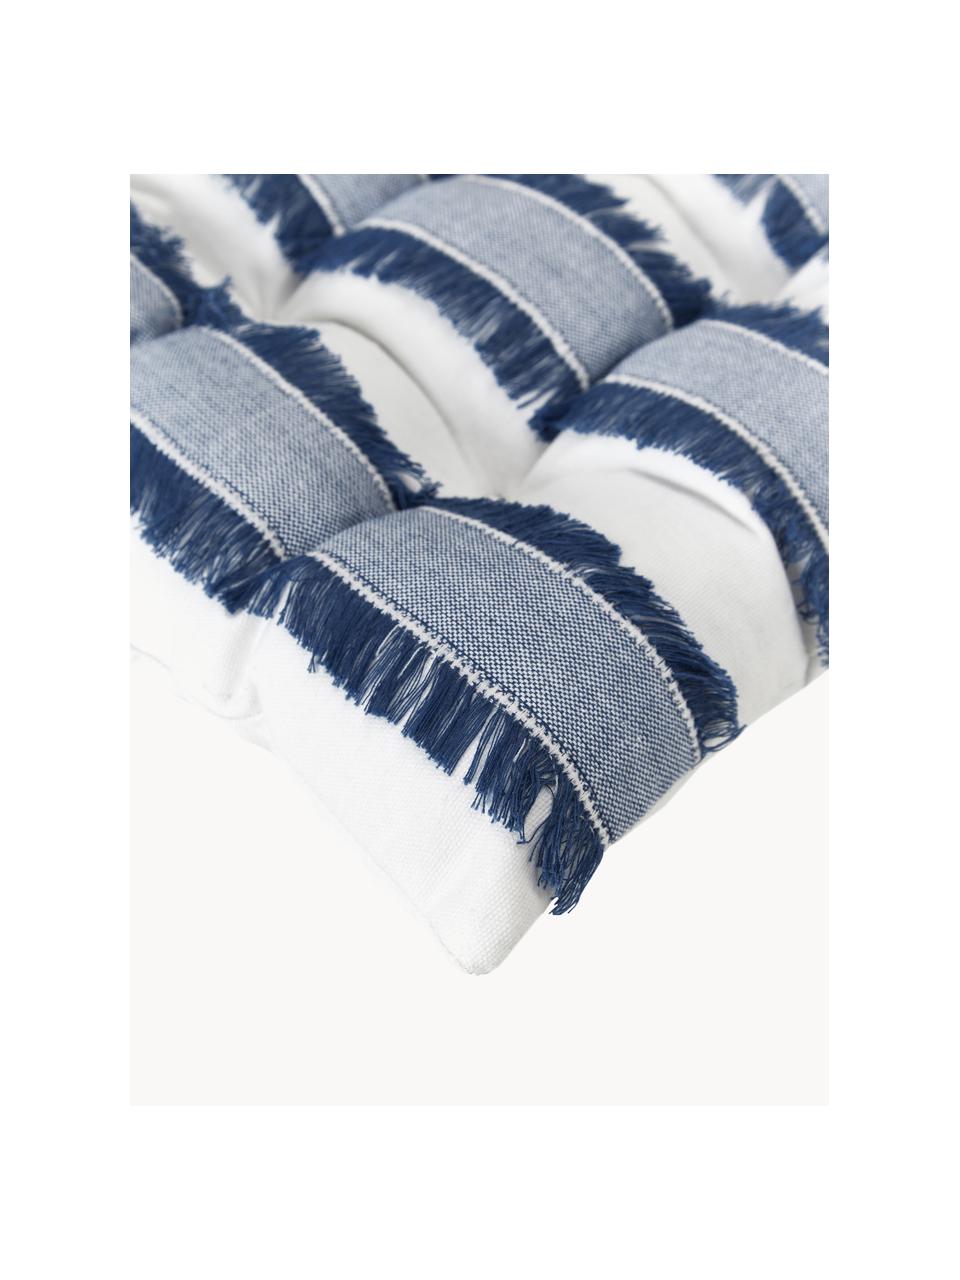 Cuscino sedia in cotone con frange Raja, Rivestimento: 100% cotone, Blu scuro, bianco crema, Larg. 40 x Lung. 40 cm